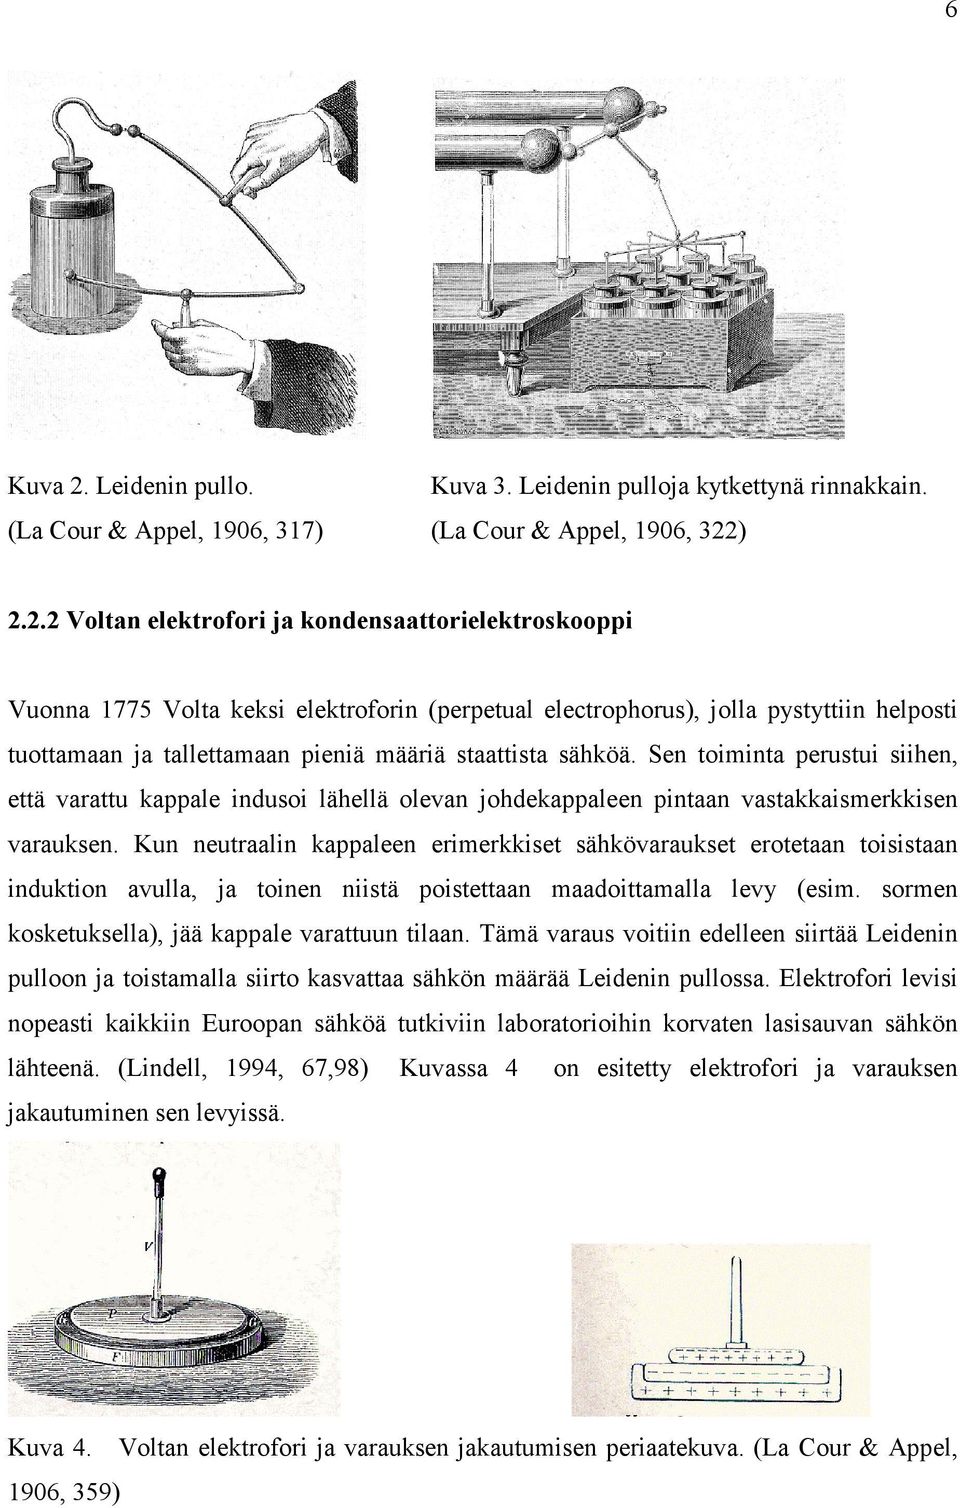 ) 2.2.2 Voltan elektrofori ja kondensaattorielektroskooppi Vuonna 1775 Volta keksi elektroforin (perpetual electrophorus), jolla pystyttiin helposti tuottamaan ja tallettamaan pieniä määriä